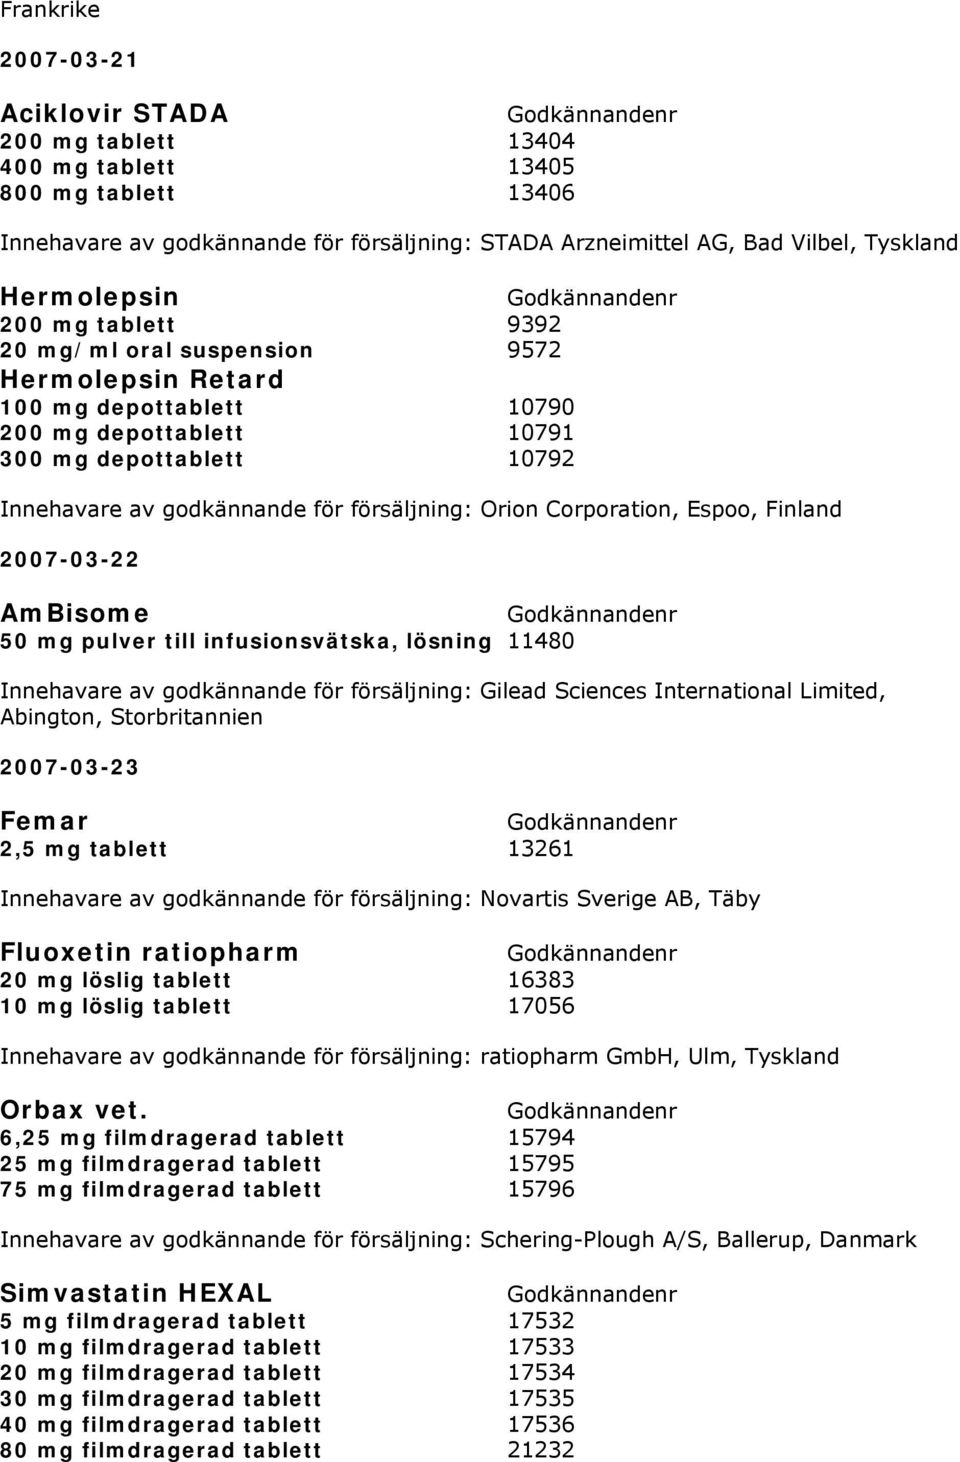 Corporation, Espoo, Finland 2007-03-22 AmBisome 50 mg pulver till infusionsvätska, lösning 11480 Innehavare av godkännande för försäljning: Gilead Sciences International Limited, Abington,